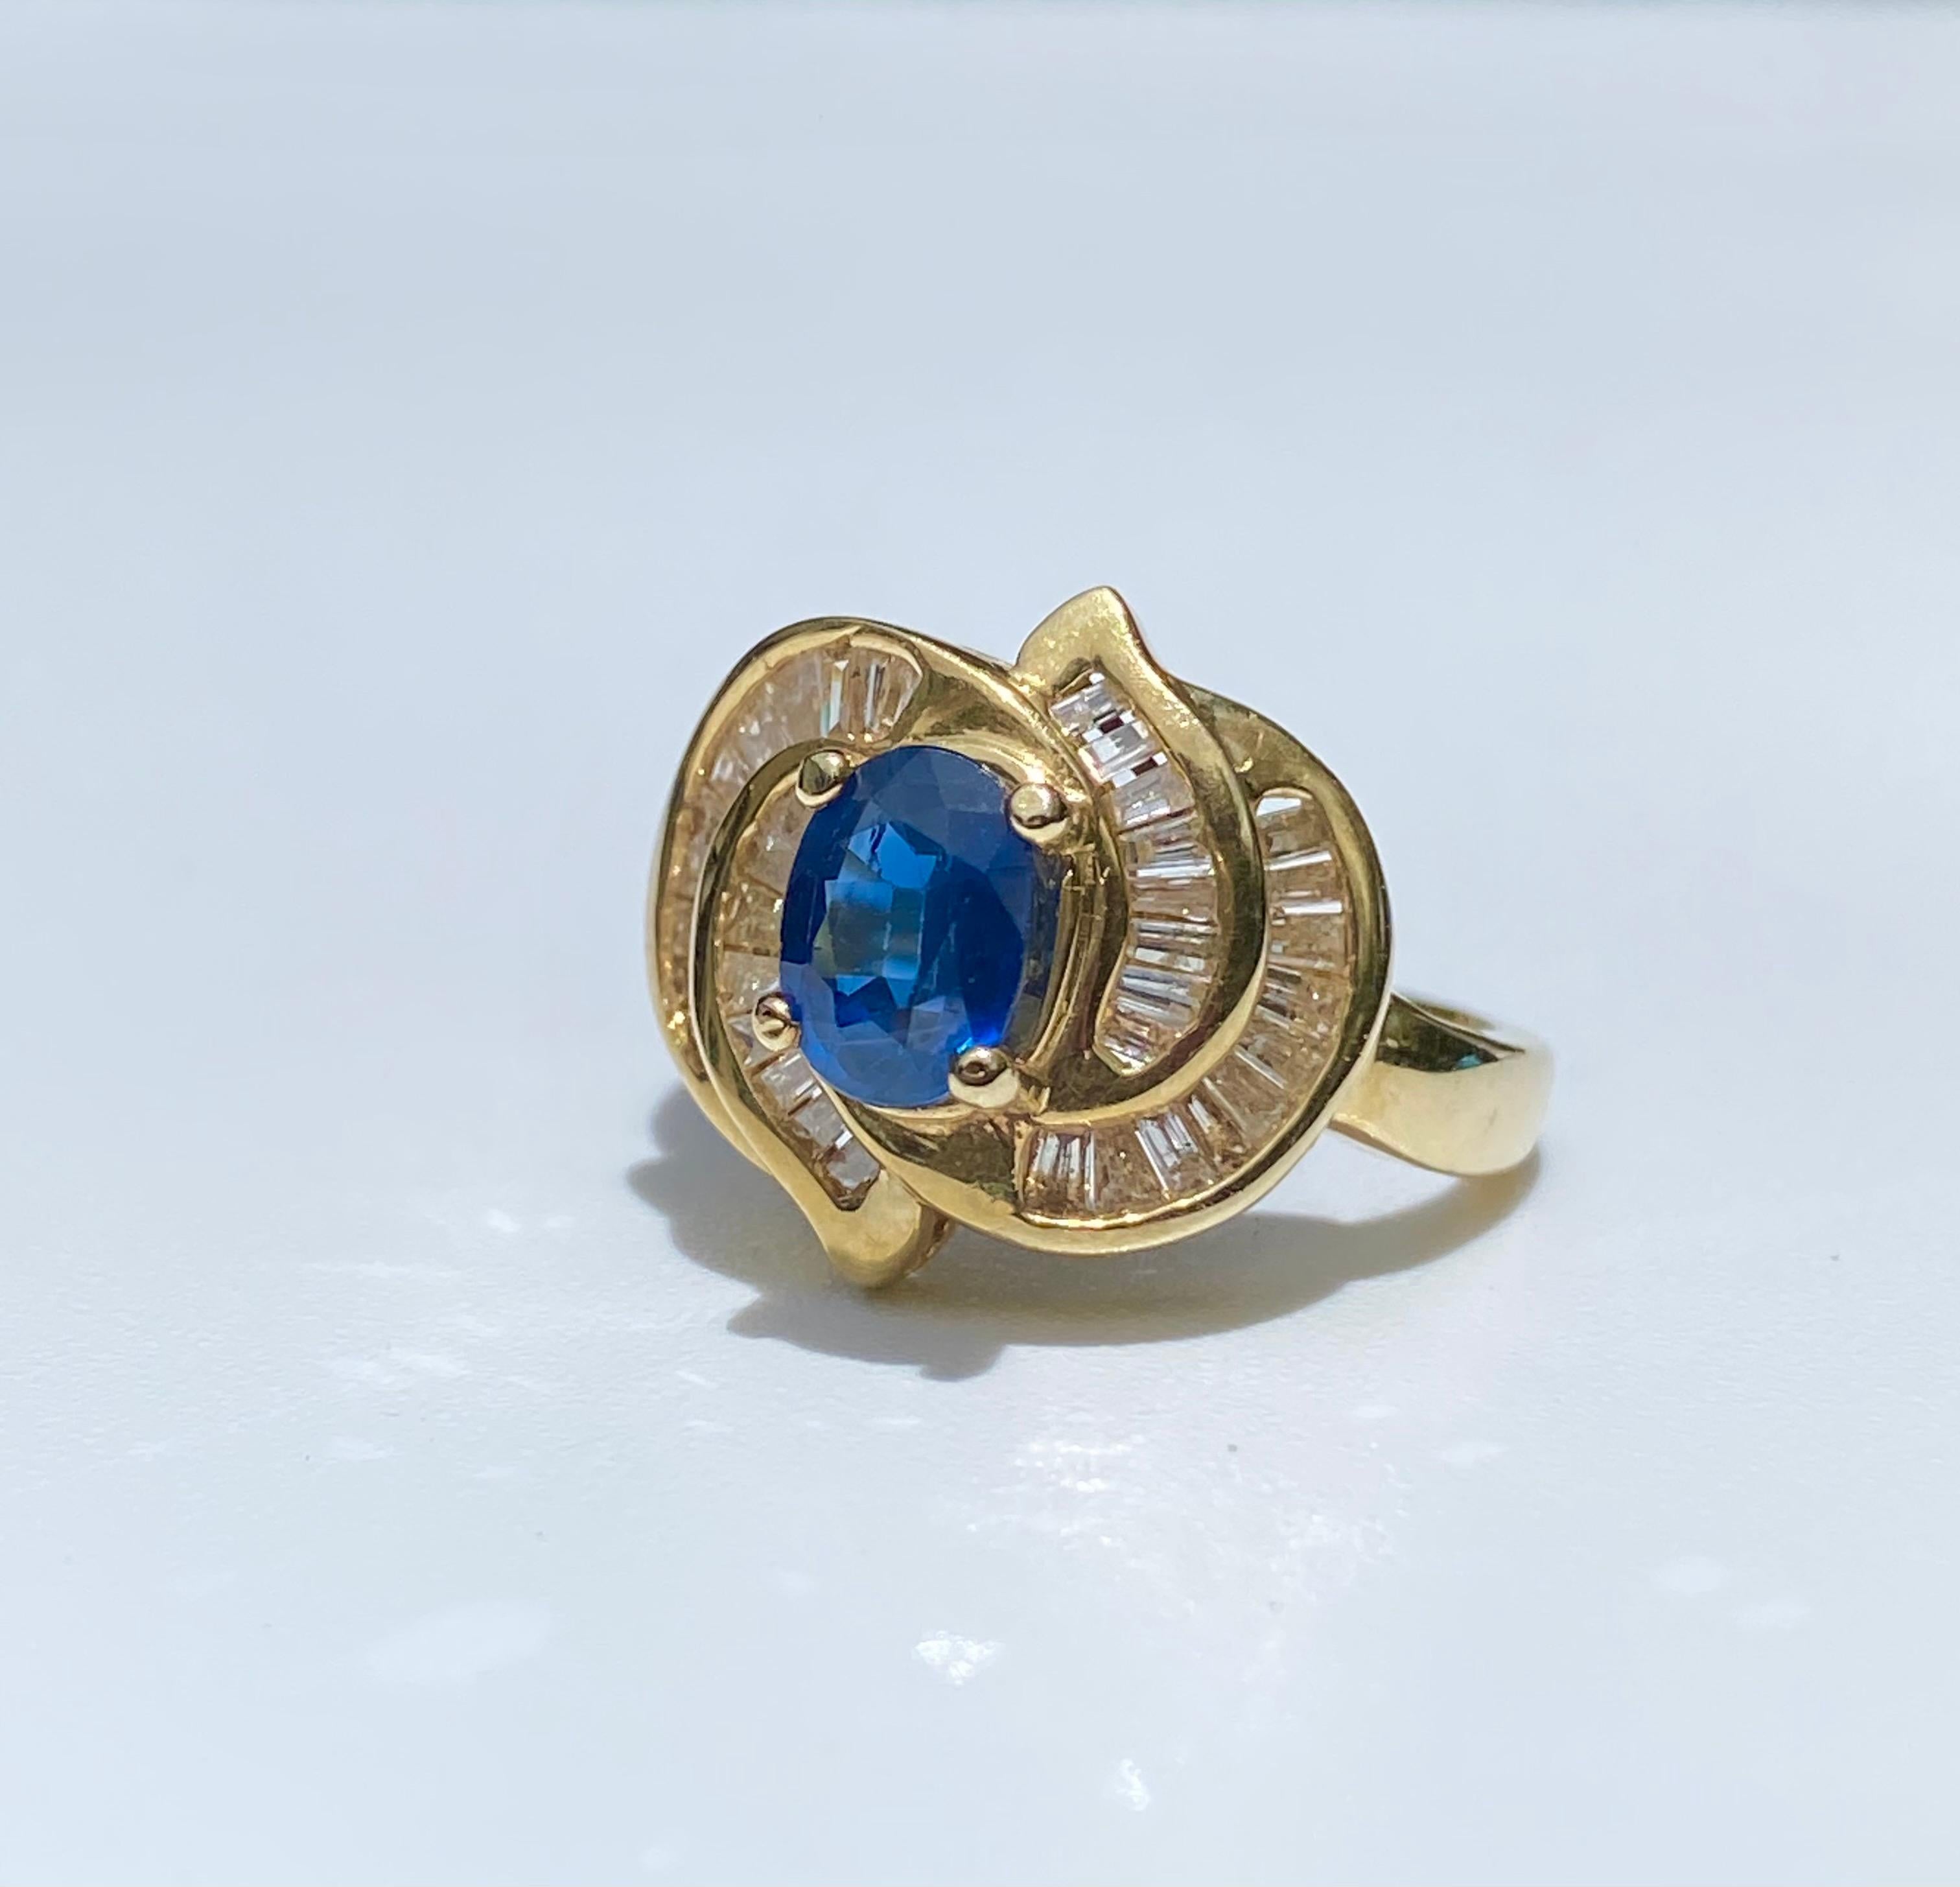 Im Mittelpunkt steht ein blauer Ceylon-Saphir (Sri Lanka) mit 0,89 Karat im Ovalschliff, der von Diamanten im Baguetteschliff akzentuiert und in 14 Karat Gelbgold gefasst ist. 

Einzelheiten:
✔ Mittelstein: Blauer Saphir
✔ Gewicht des Saphirs: 0,89